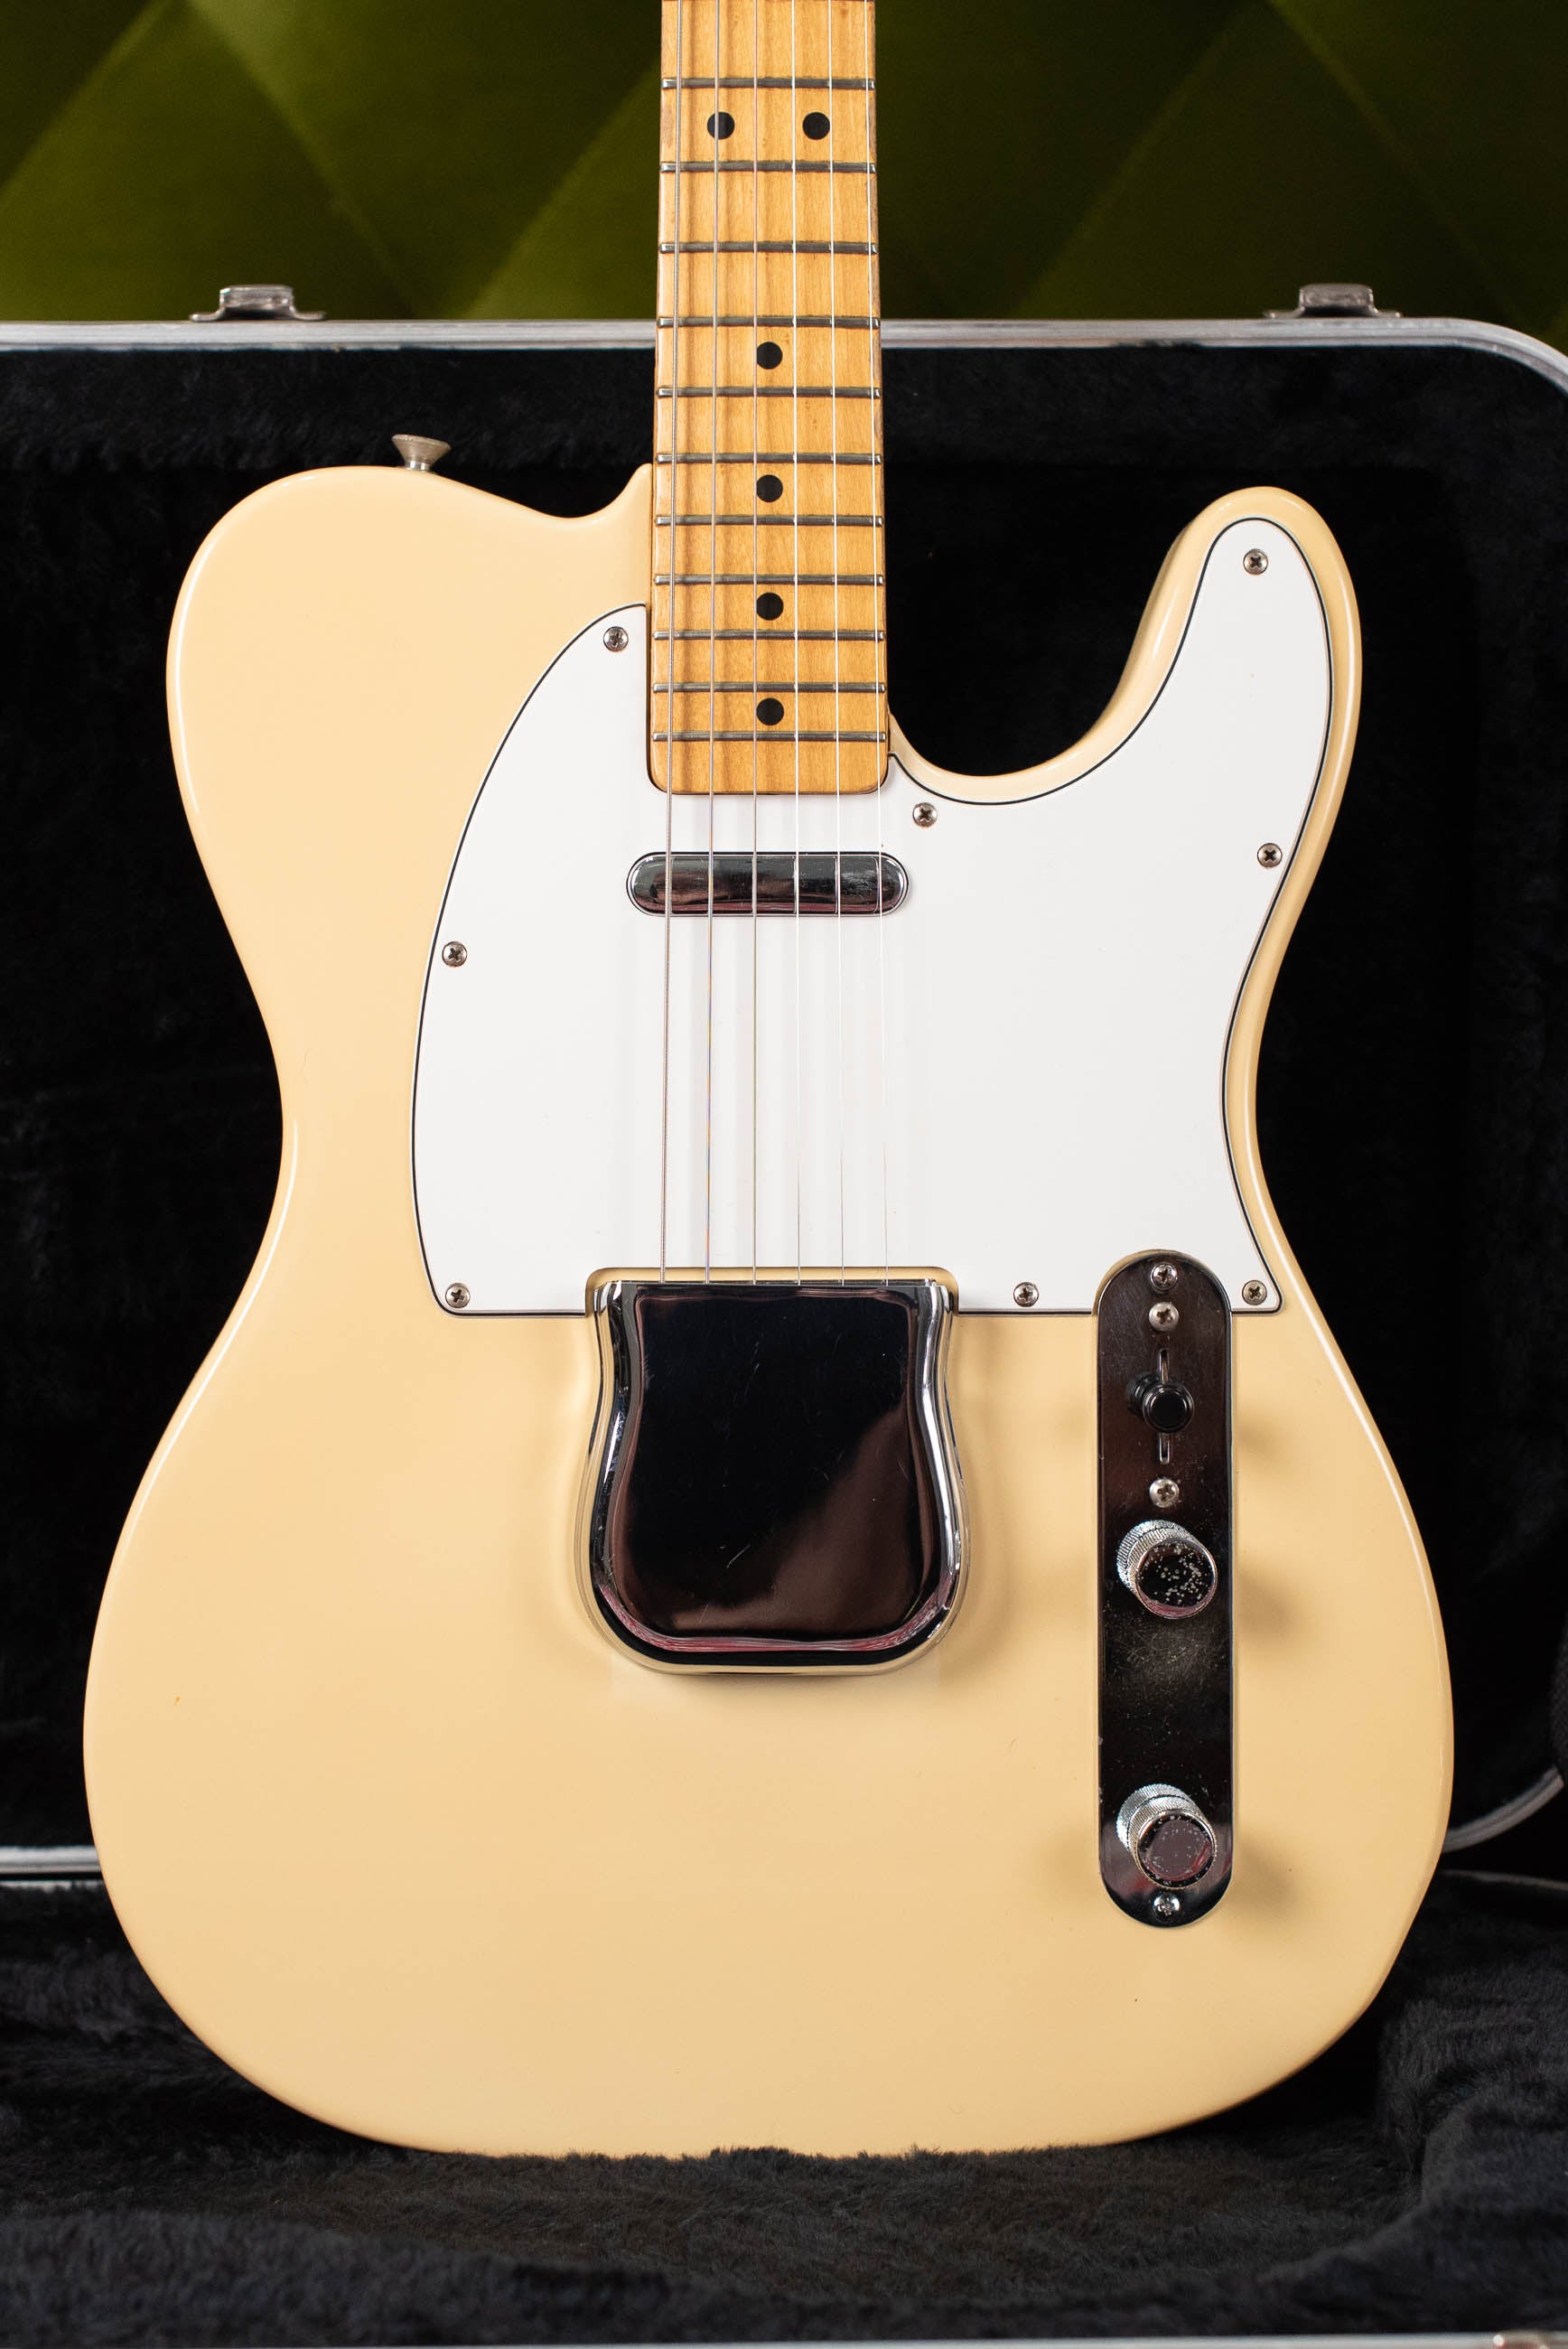 Vintage 1982 Fender Telecaster guitar Blond